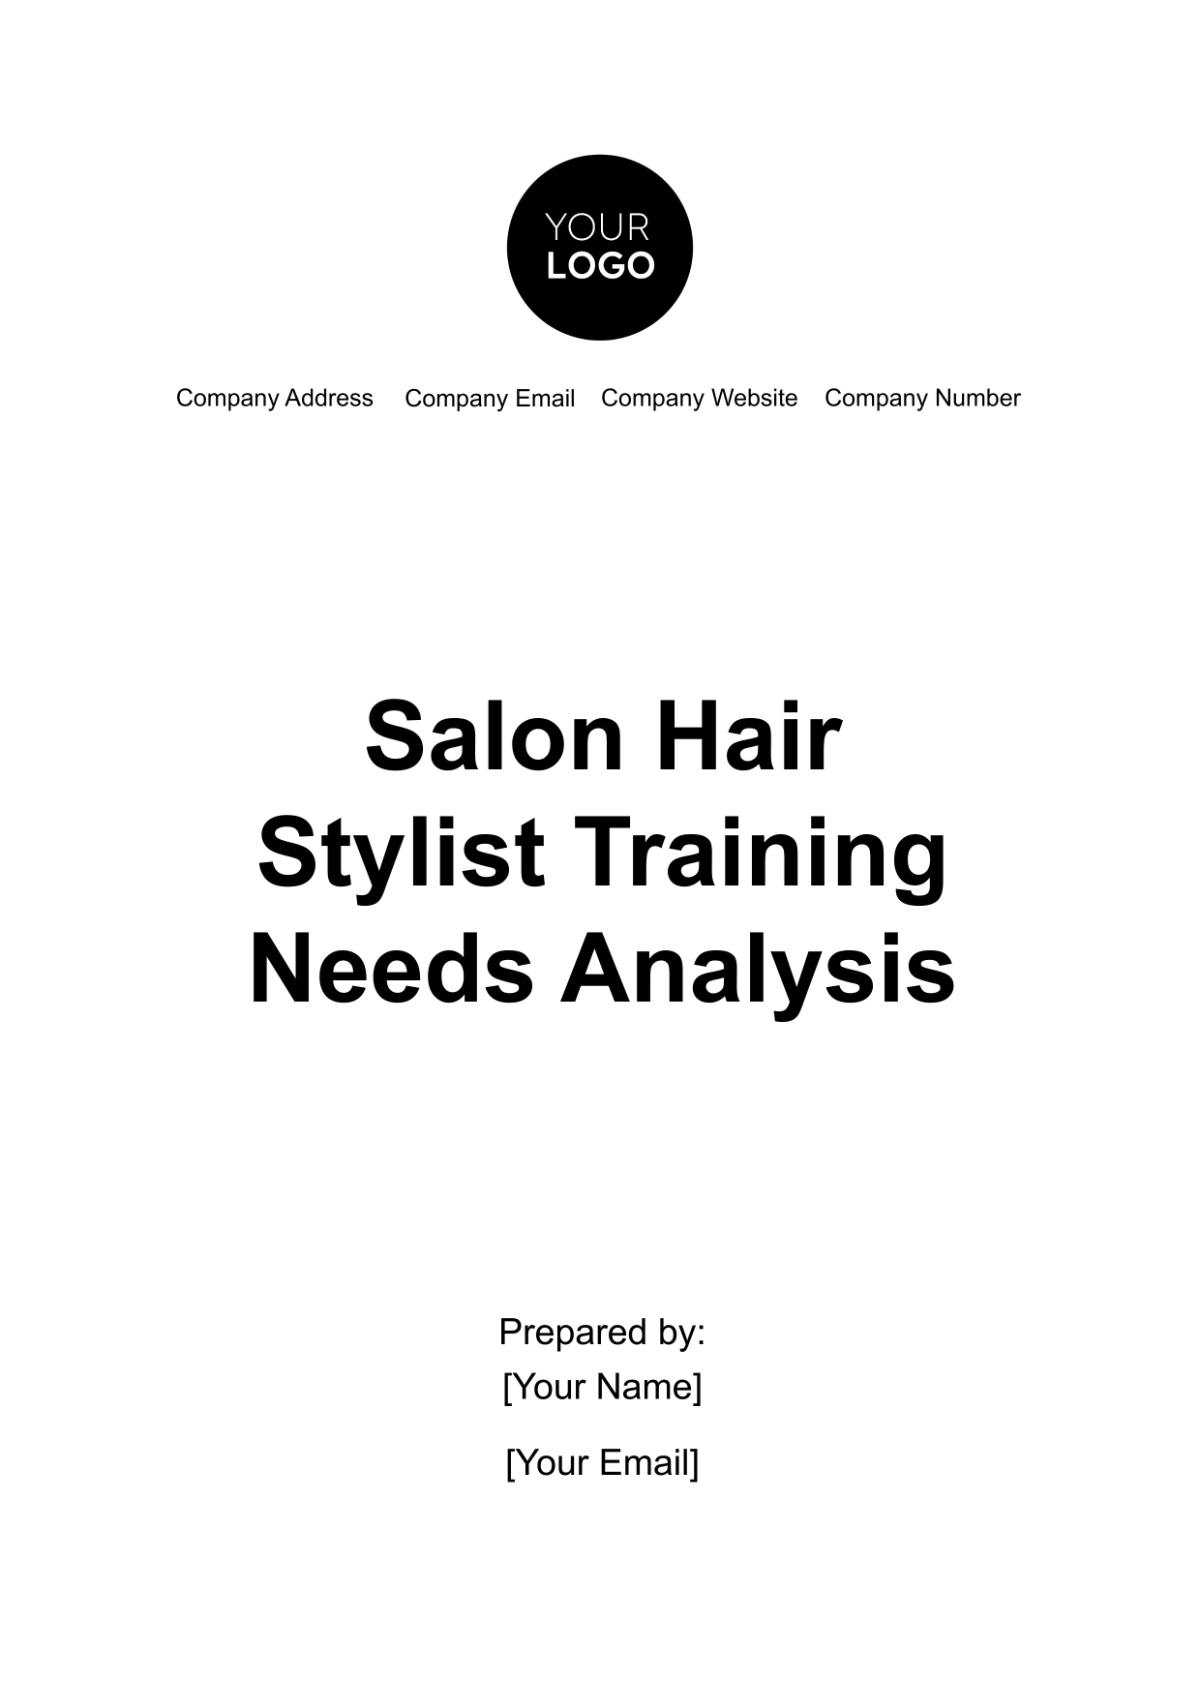 Salon Hair Stylist Training Needs Analysis Template